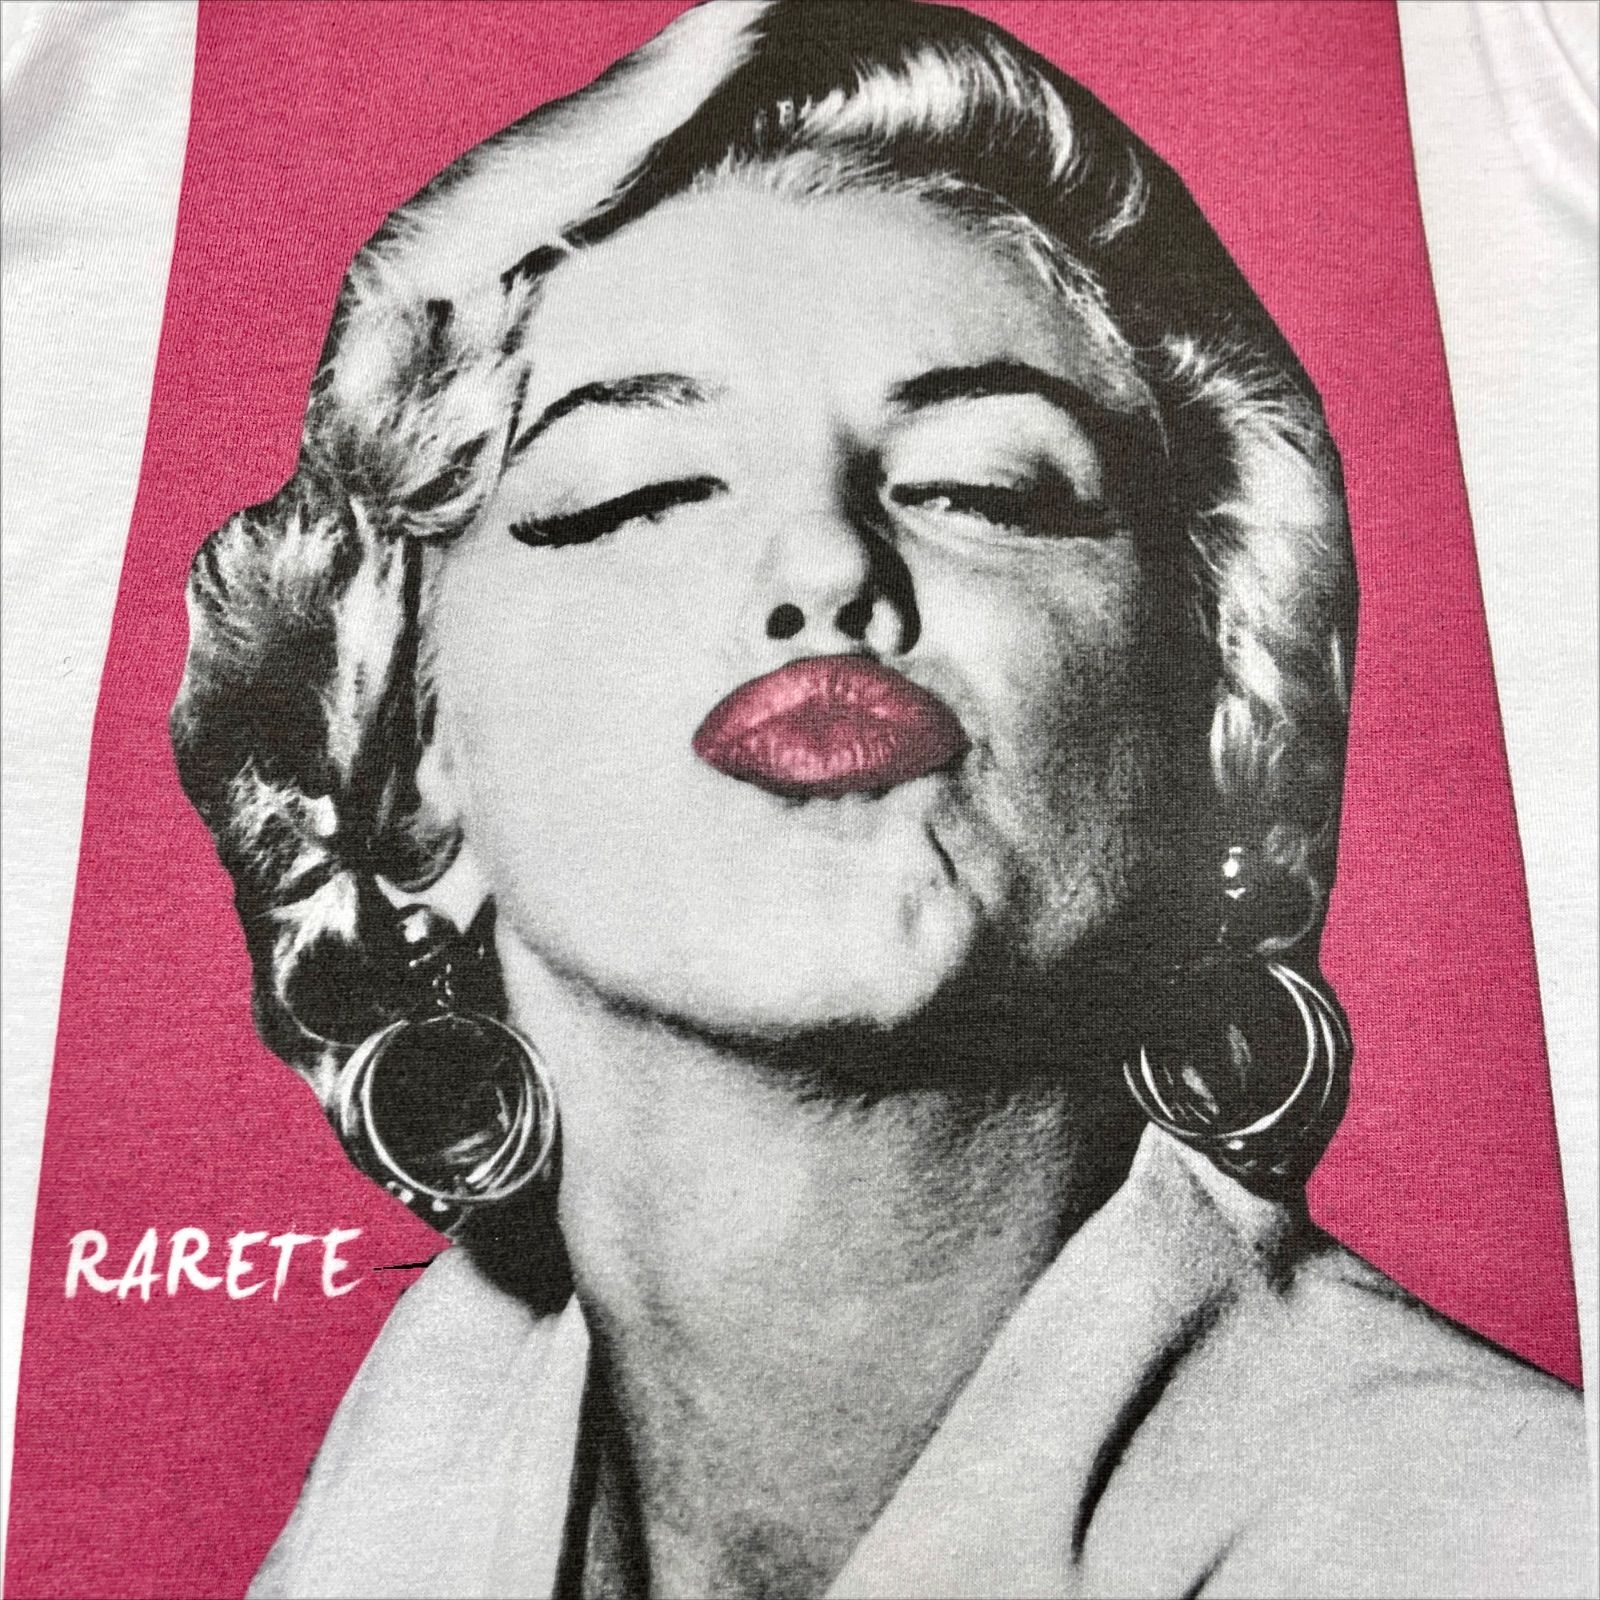 RARETE ラルテ マリリンモンロー KISS キス 唇 白 ホワイト Tシャツ アメリカ セックス シンボル セクシー ブランド 50年代  ハリウッド 黄金期 映画 女優 ムービー グラフィック プリント ストリート ファッション 小さい 大きい サイズ